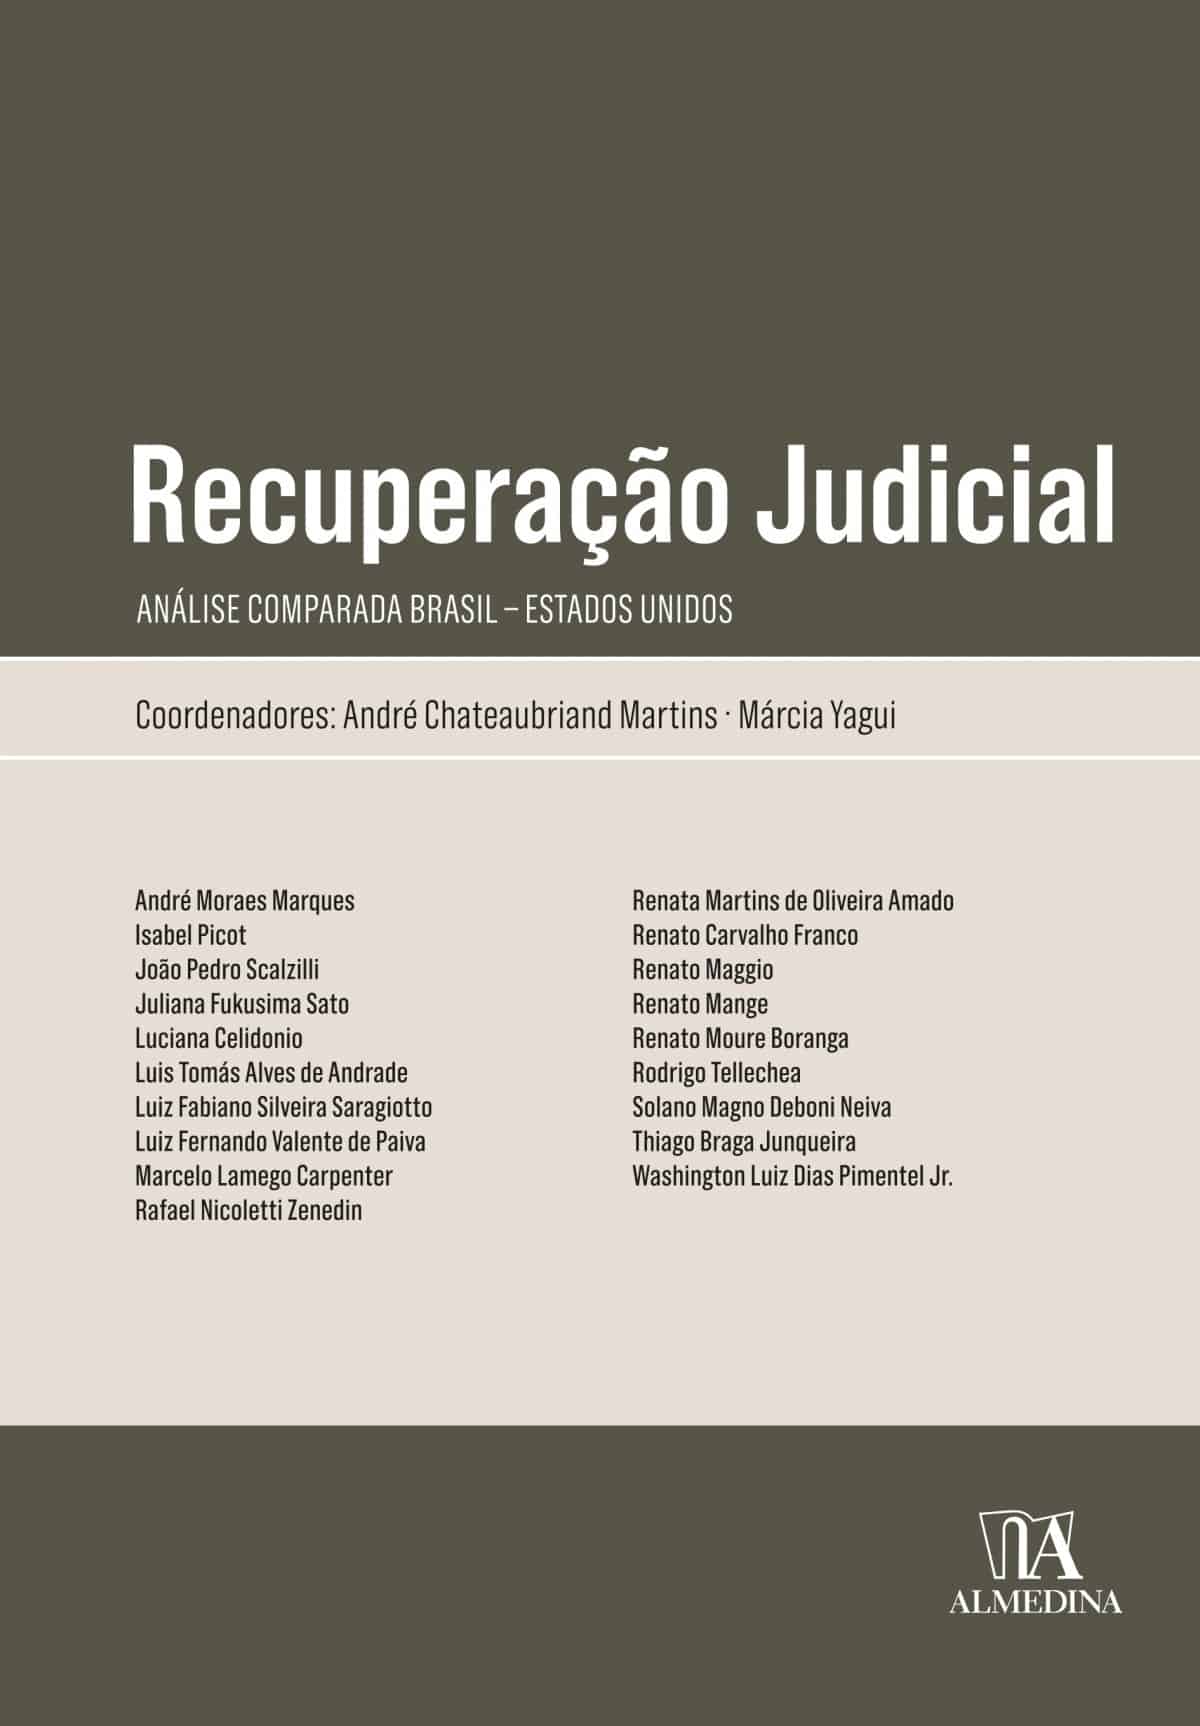 Foto 1 - Recuperação Judicial - Análise comparada Brasil - Estados Unidos